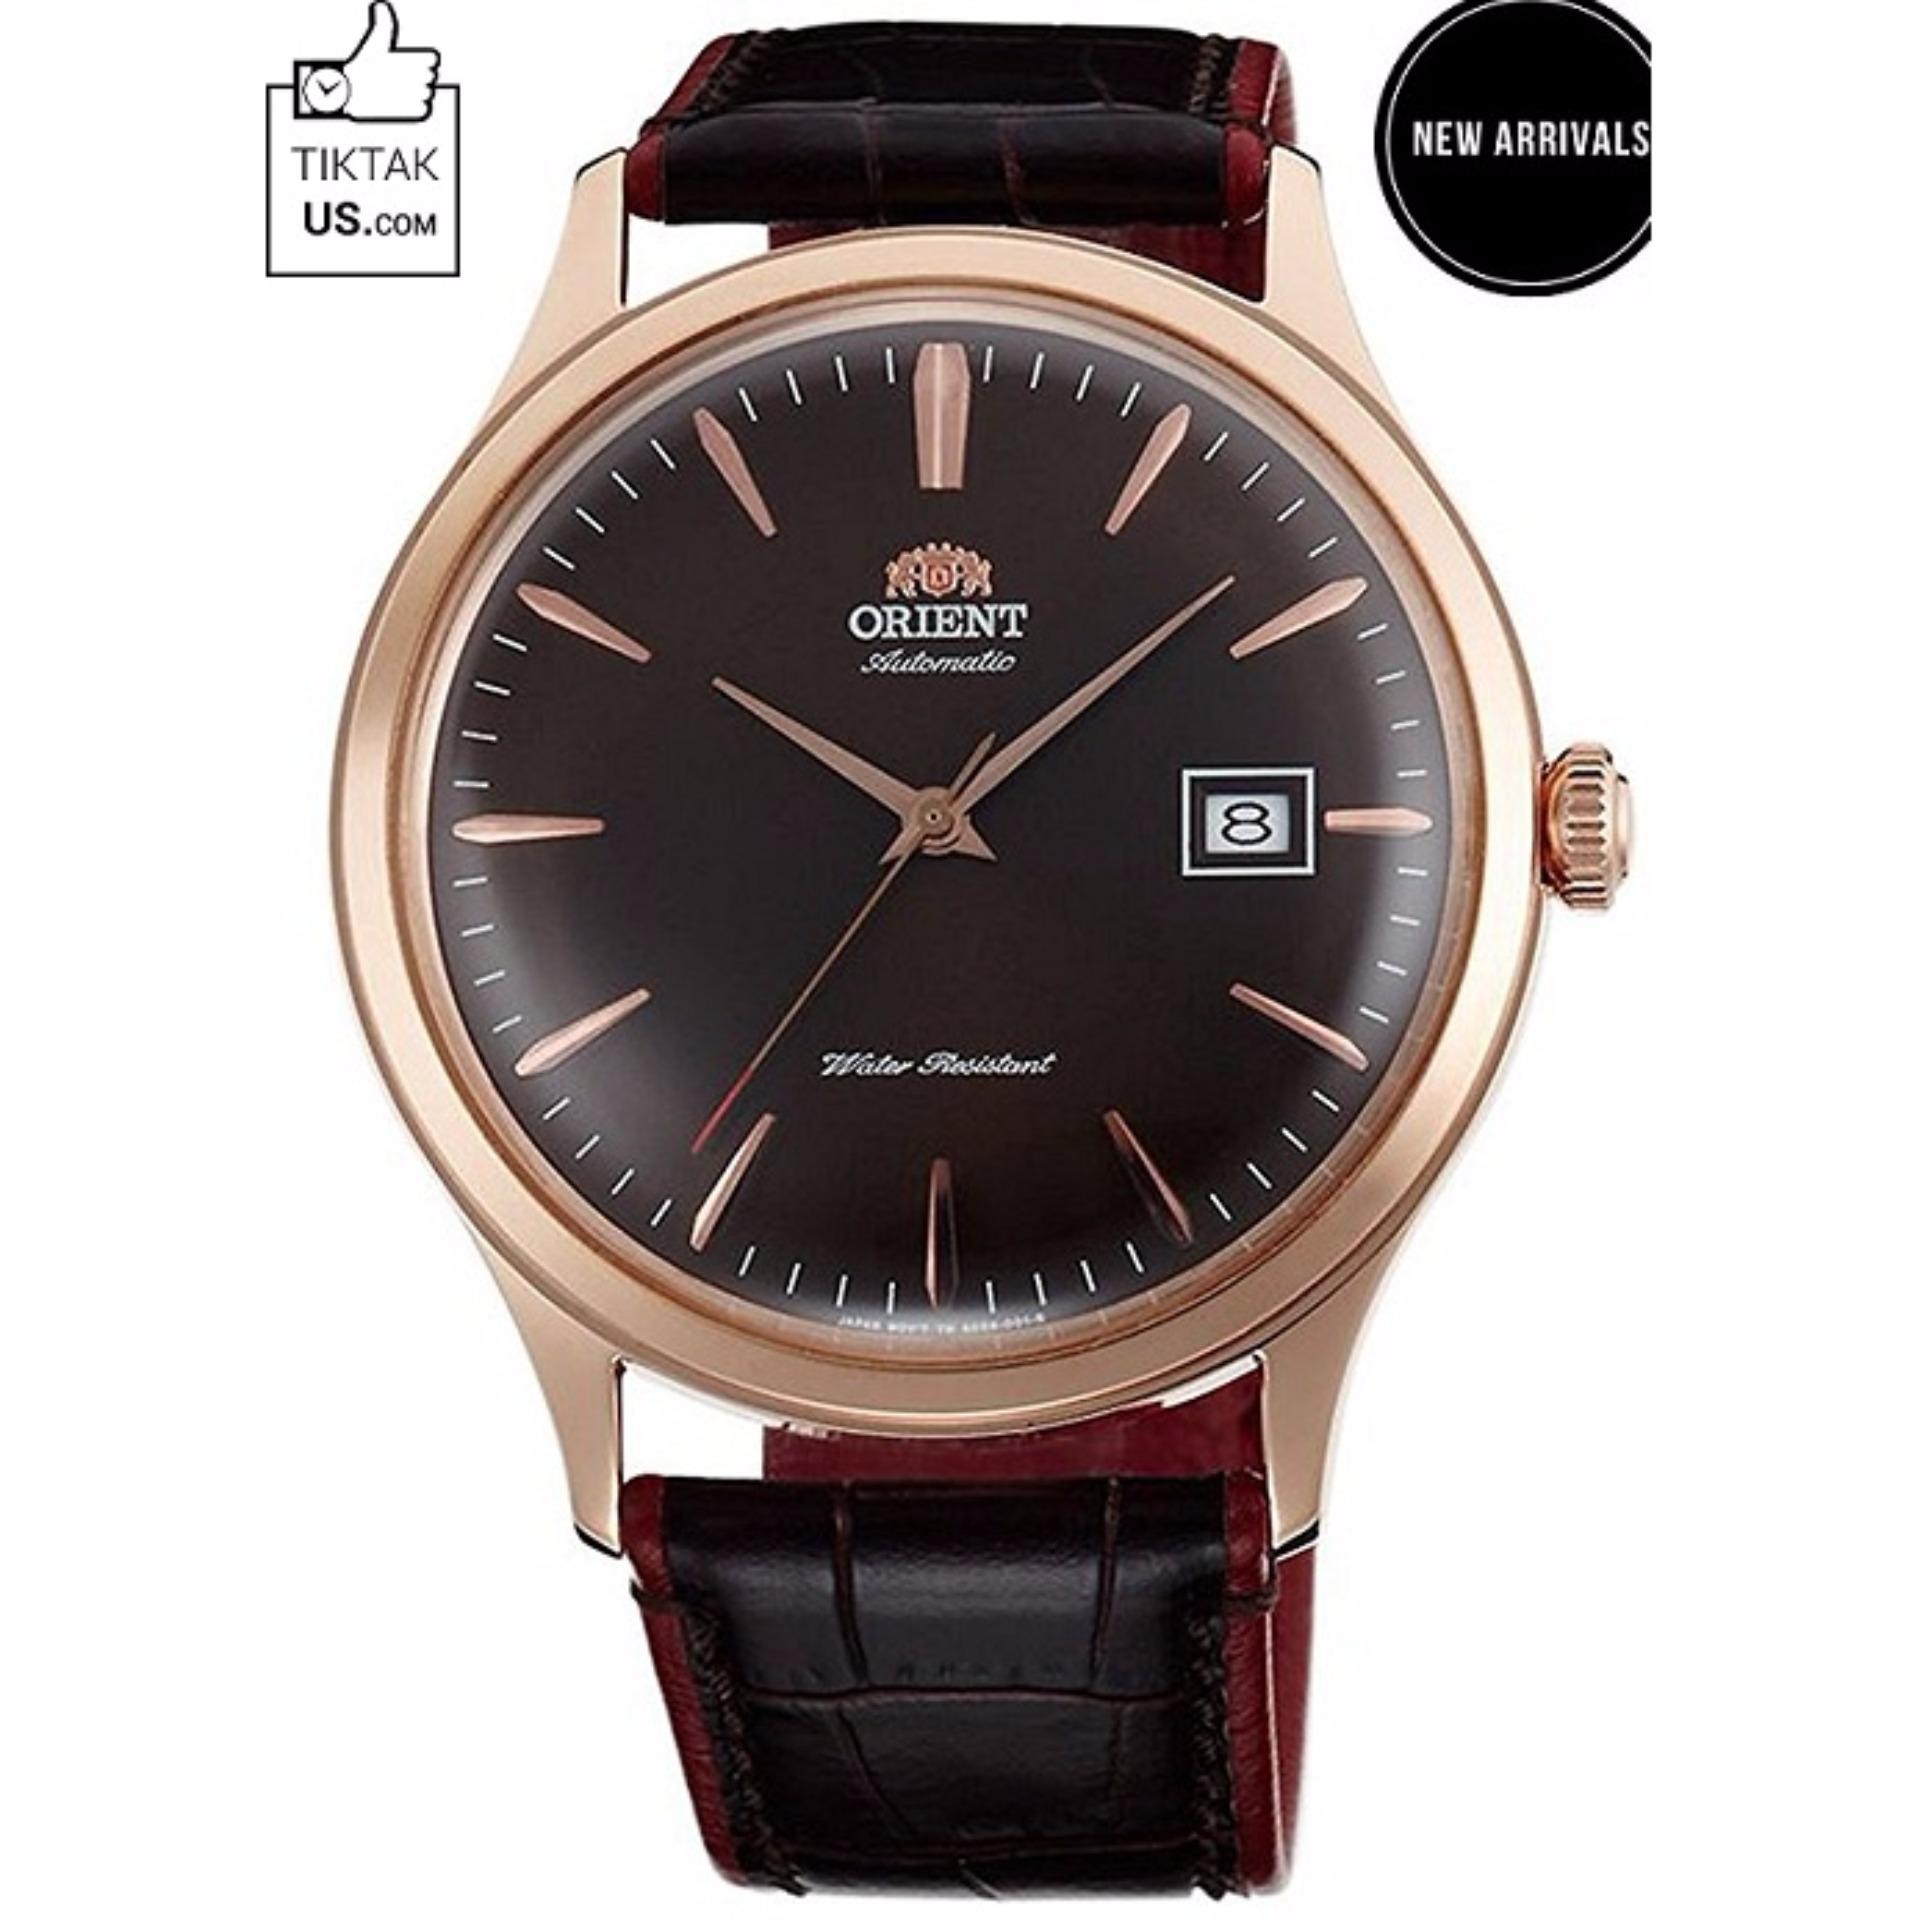 Đồng hồ nam dây da Orient Bambino Gen 4 FAC08001T0